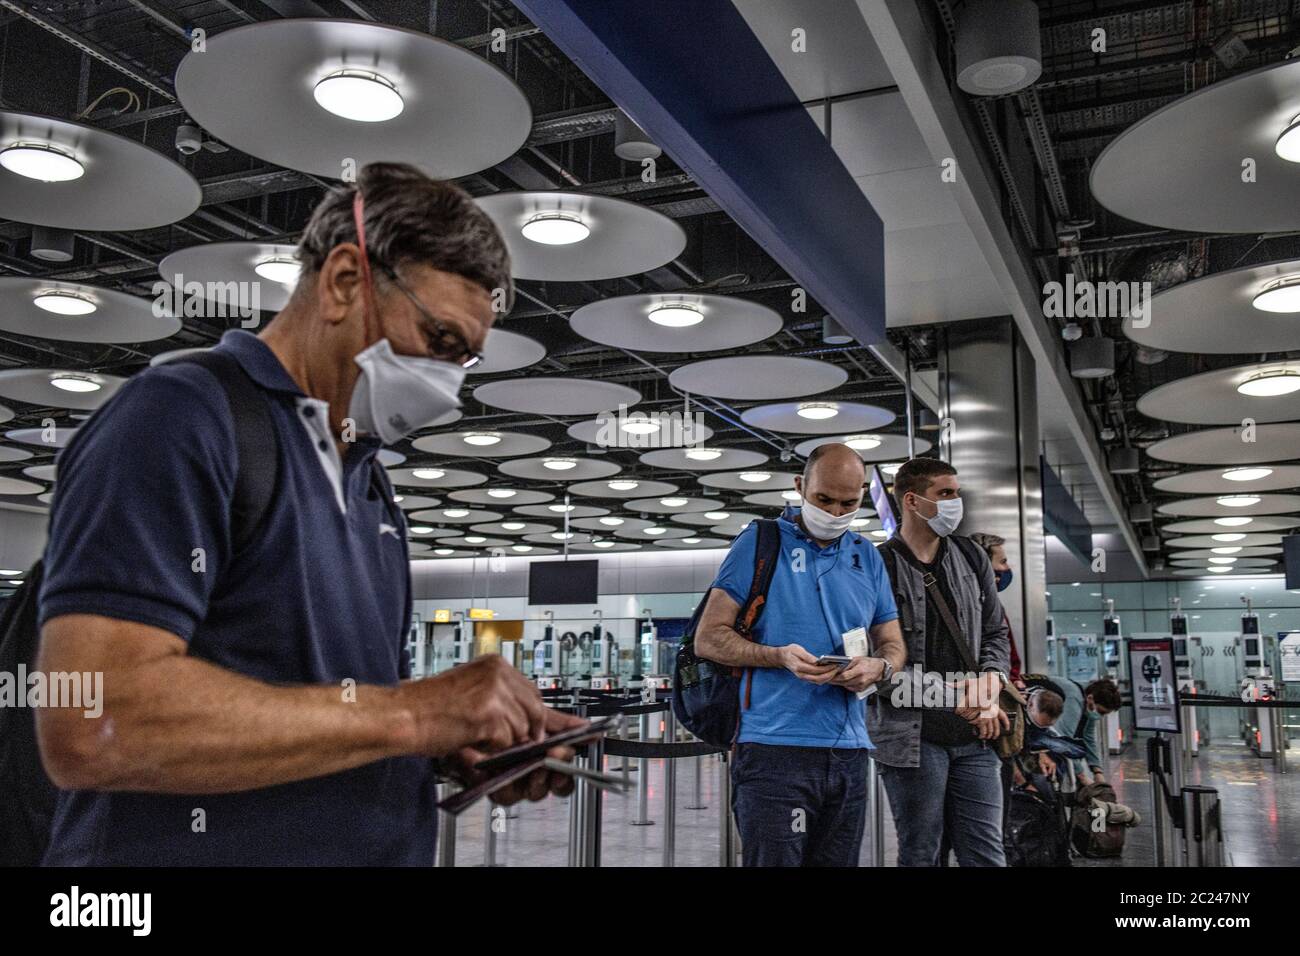 Les voyageurs arrivant au terminal 5 de Heathrow pendant la politique de quarantaine de 41 jours pour tenter de contrôler la pandémie du coronavirus Covid 19 par les passagers. Banque D'Images